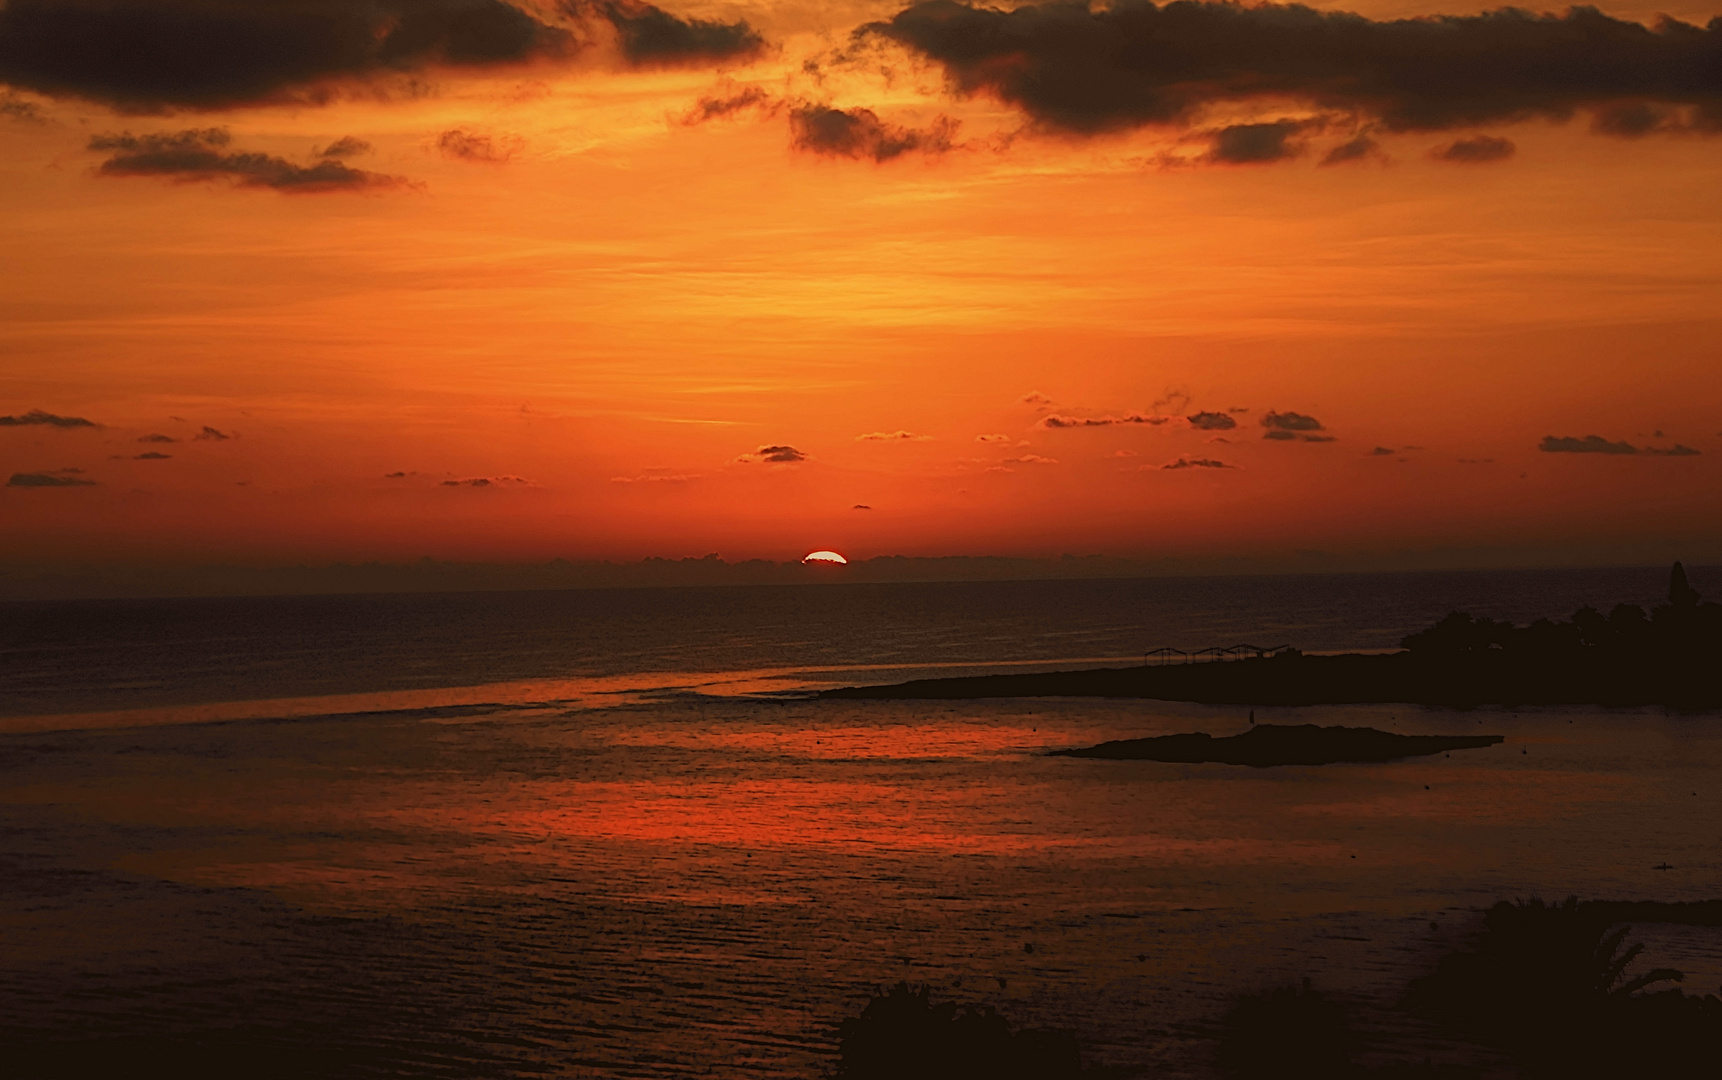 Sunrise of Zypern -Letzter Tag - Gestern um 6.30 Uhr  zyprischer zeit